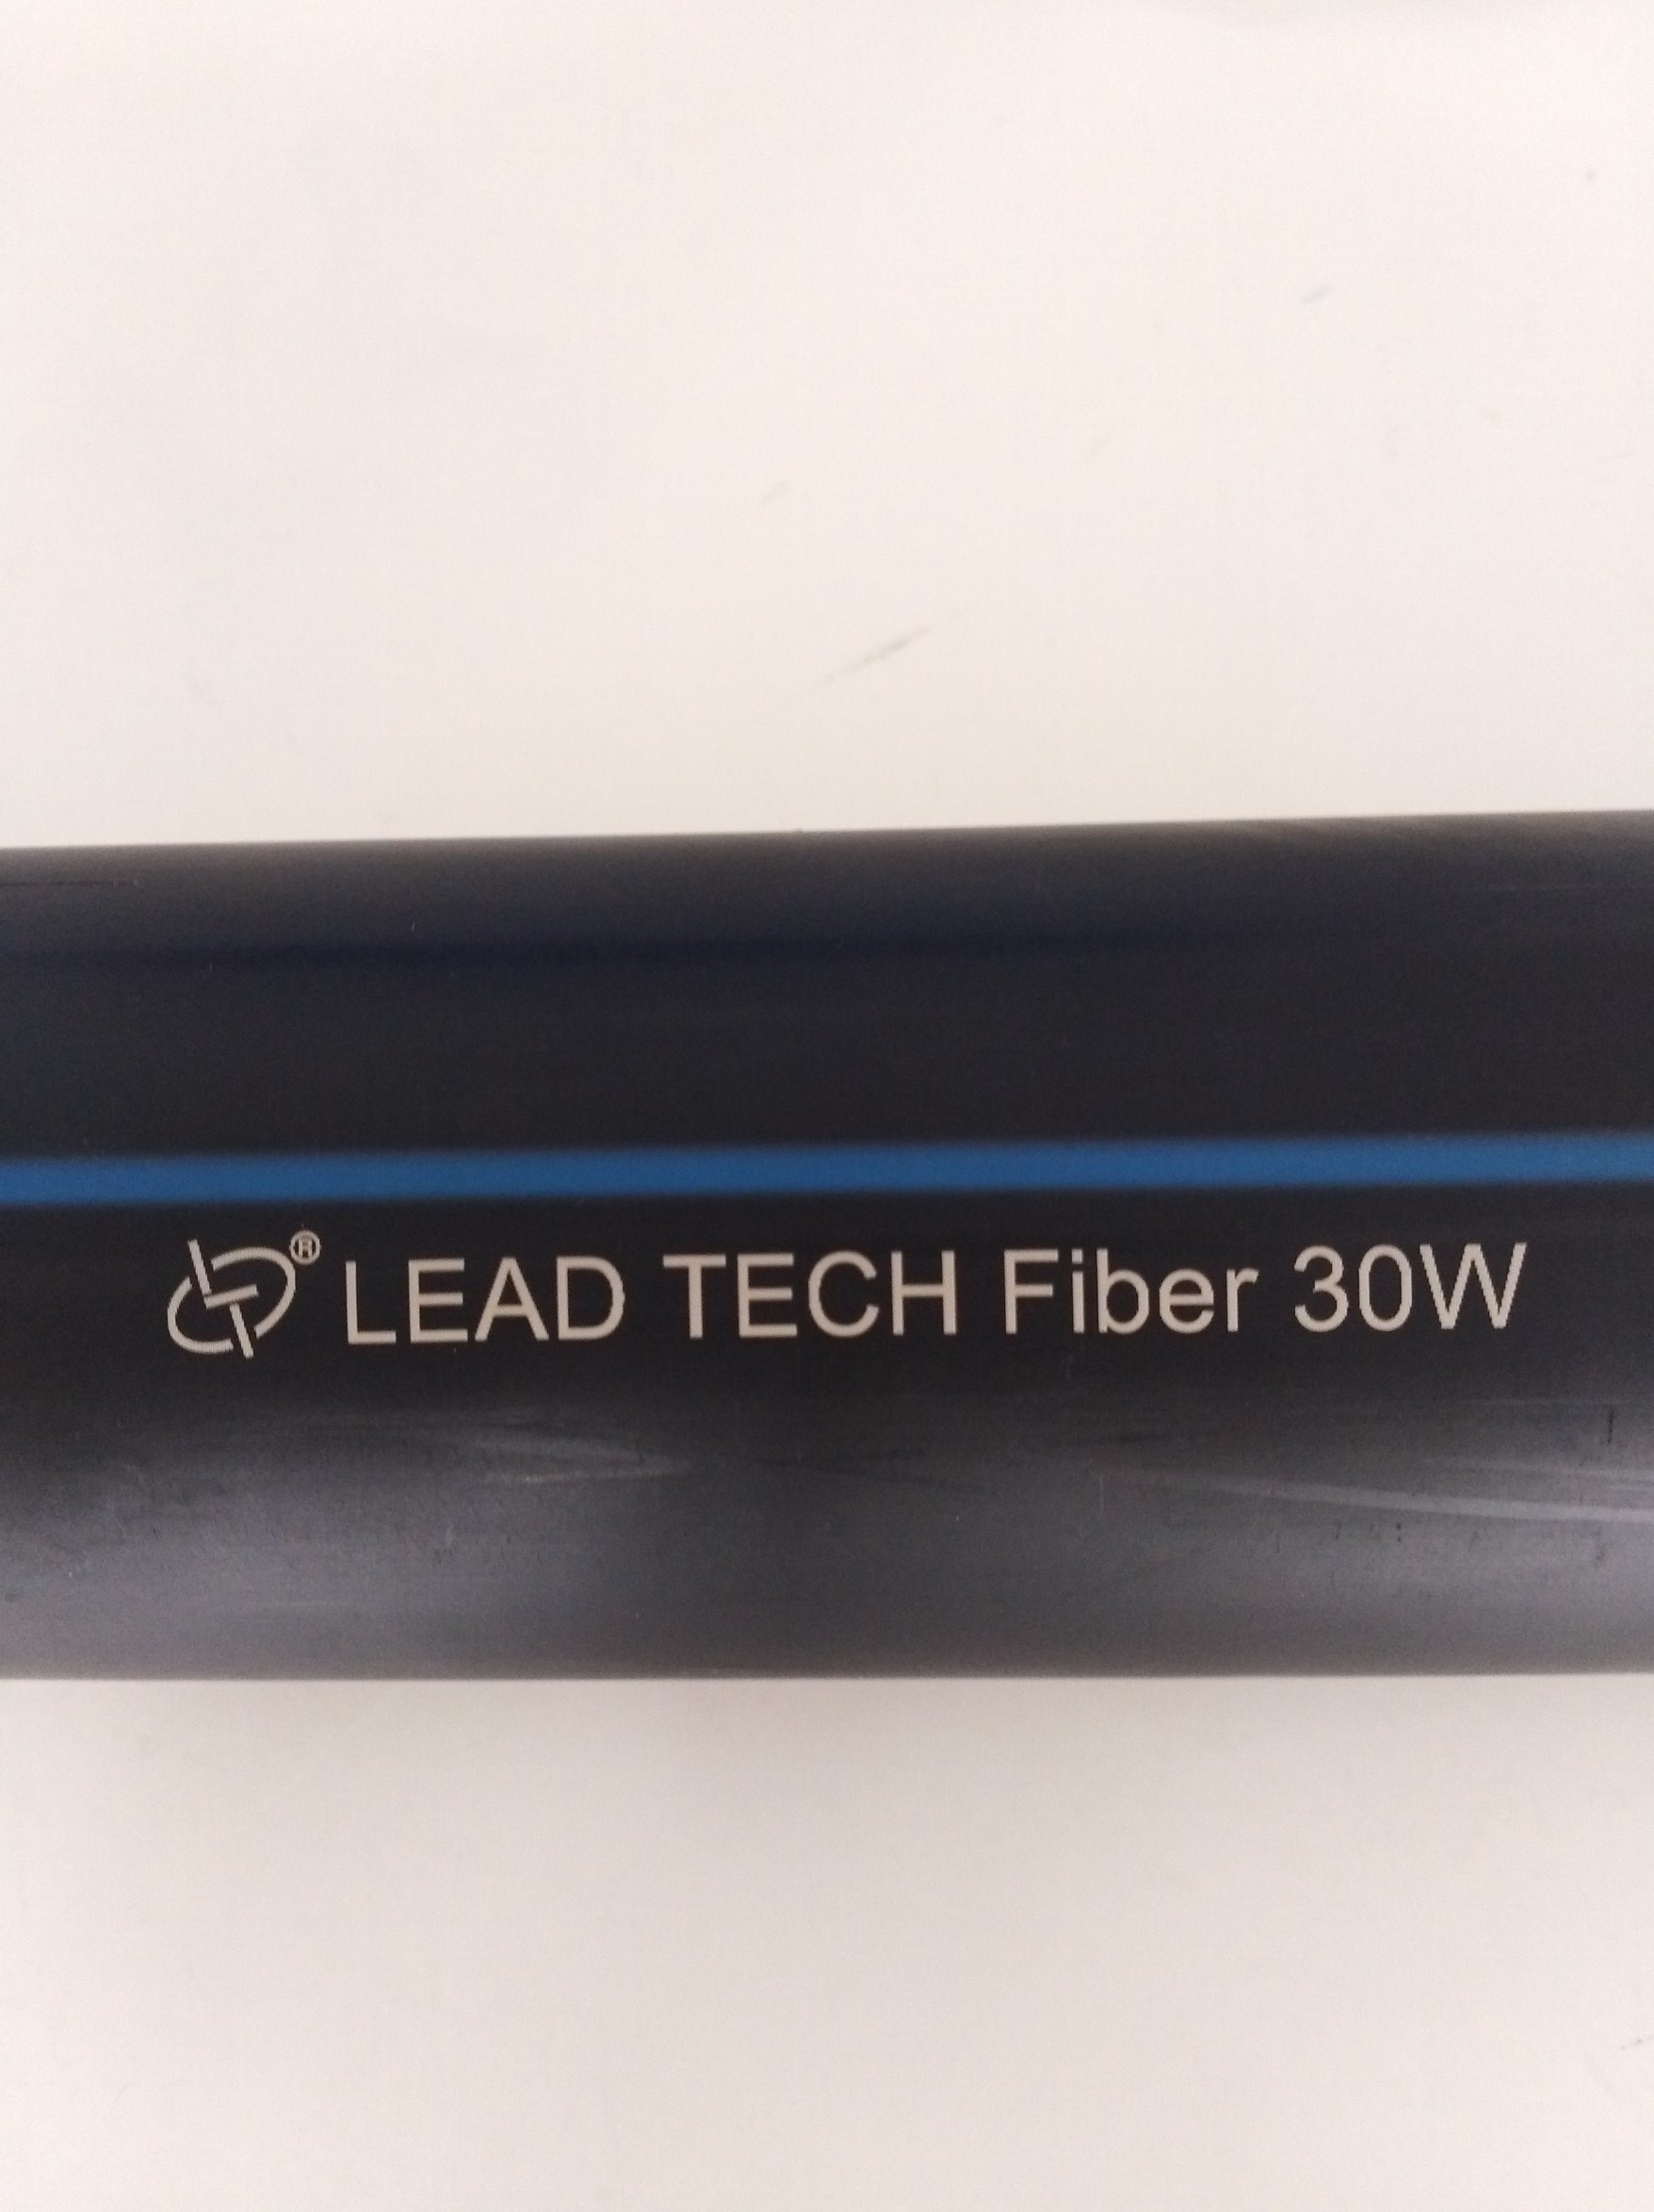 Lt8020f/Lt8030f/Lt8050f Fiber High Precision Digital Laser Printer for Pipe/Leather